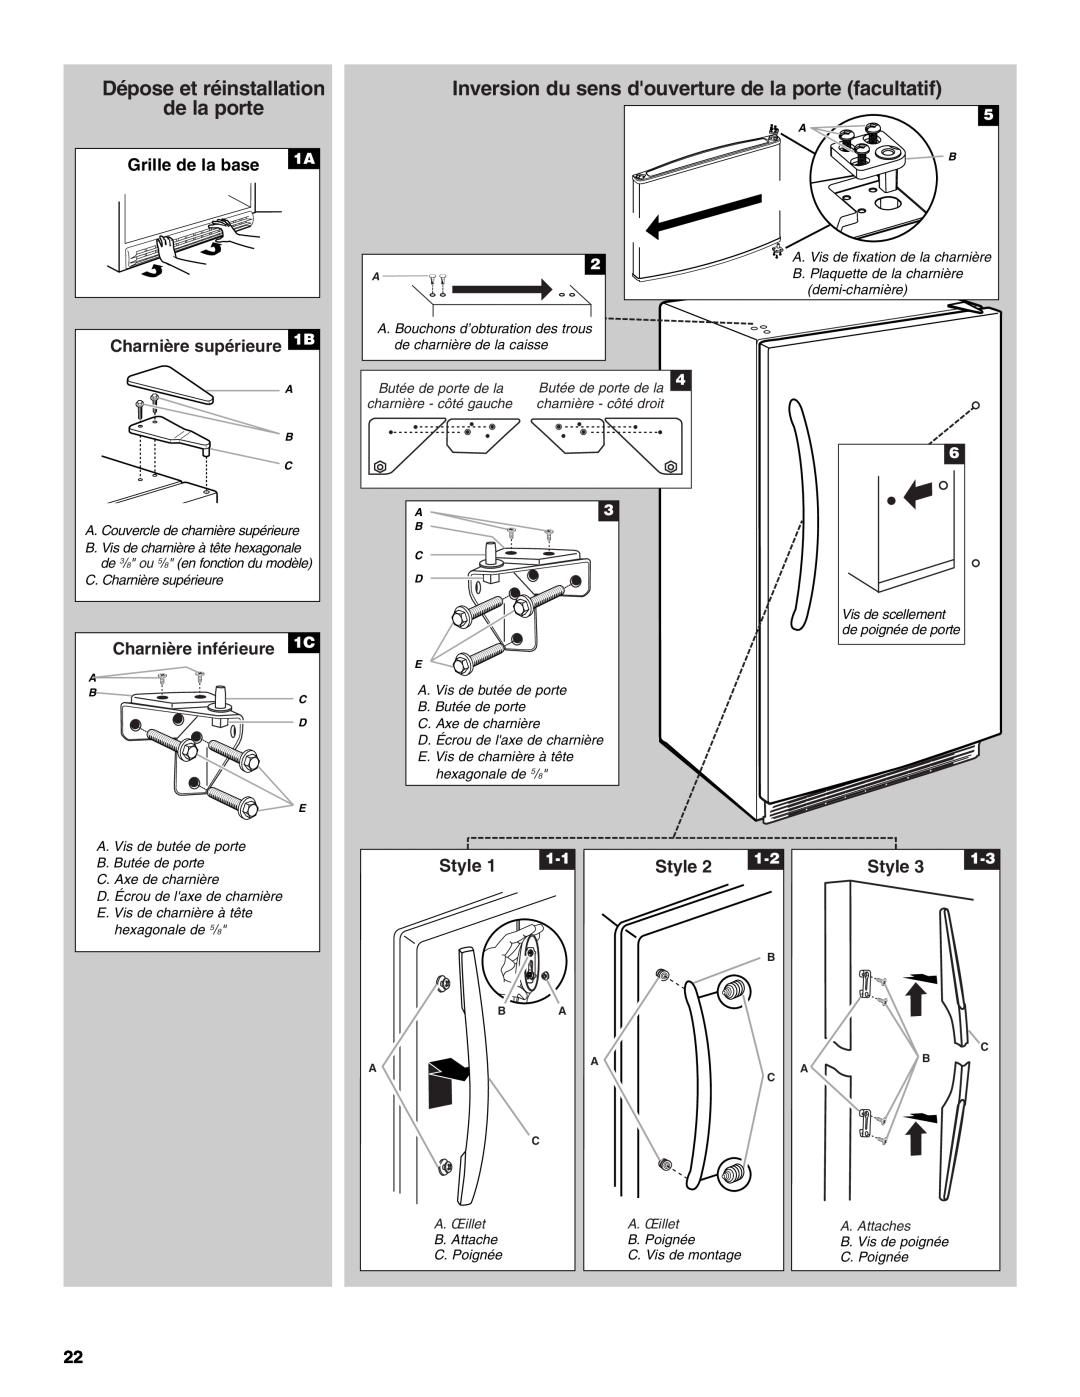 Whirlpool EV161NZTQ manual Dépose et réinstallation de la porte, Charnière supérieure 1B, Charnière inférieure 1C, Style 